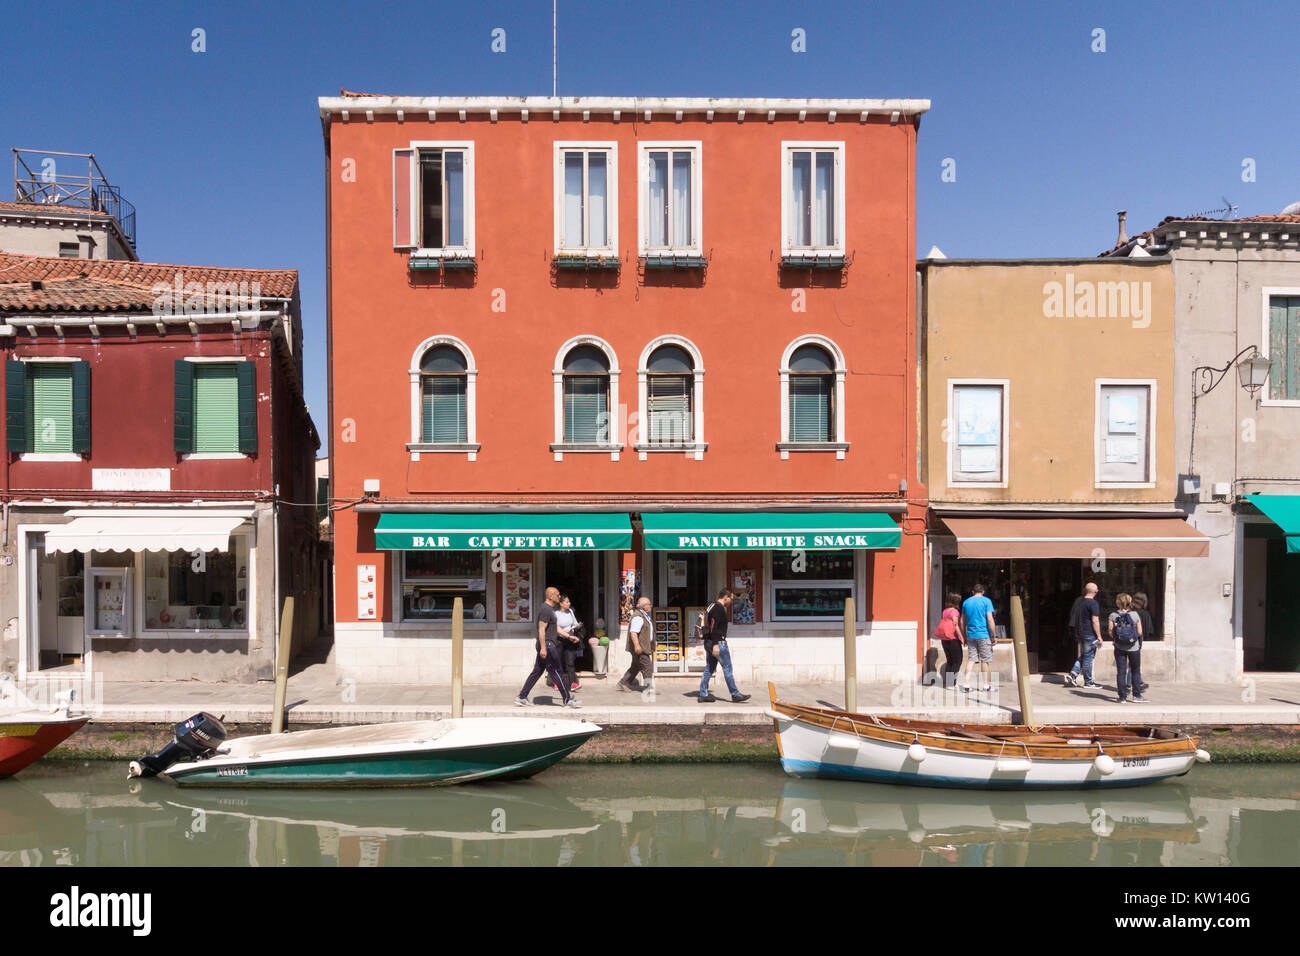 Les touristes en passant devant un bar aux couleurs vives et d'un café sur l'île de Murano, Venise Banque D'Images